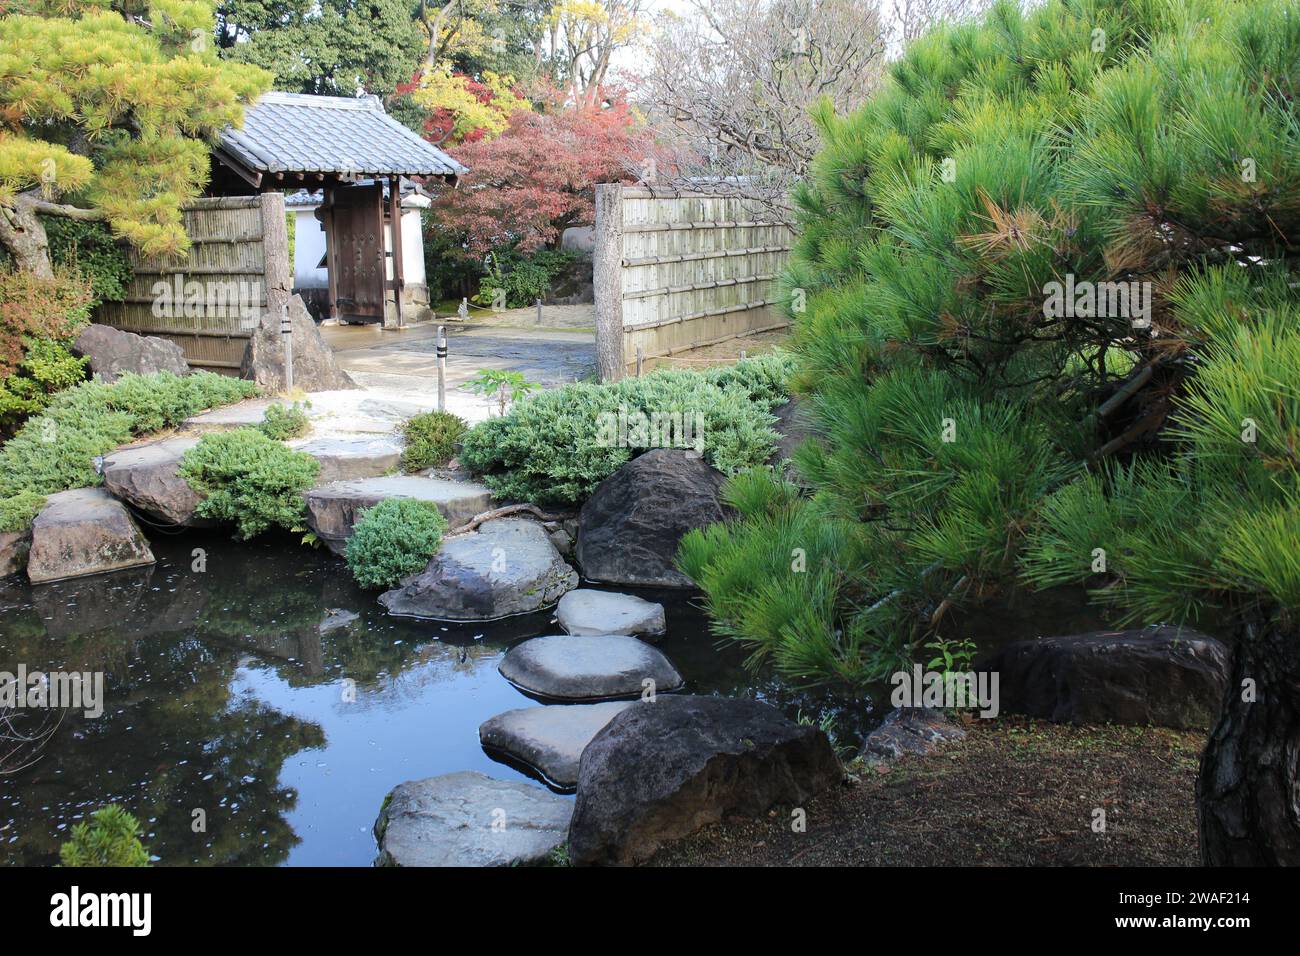 Autumn leaves in Flatly Landscaped Garden in Koko-en Garden, Himeji, Japan Stock Photo